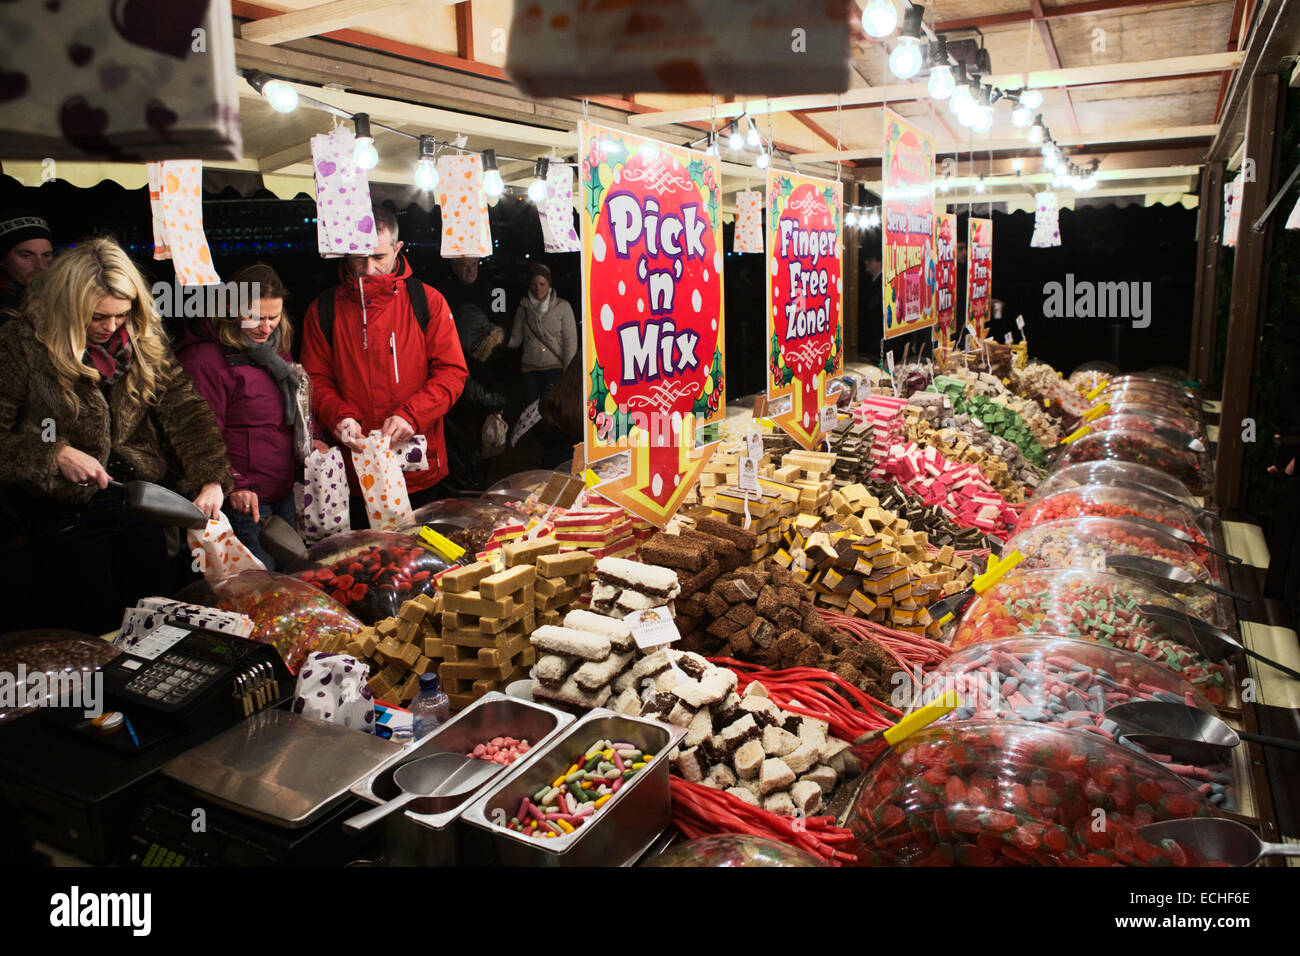 Choisir et mélanger décrochage, les clients choisissant l'pick n mix bonbons, London UK. Banque D'Images